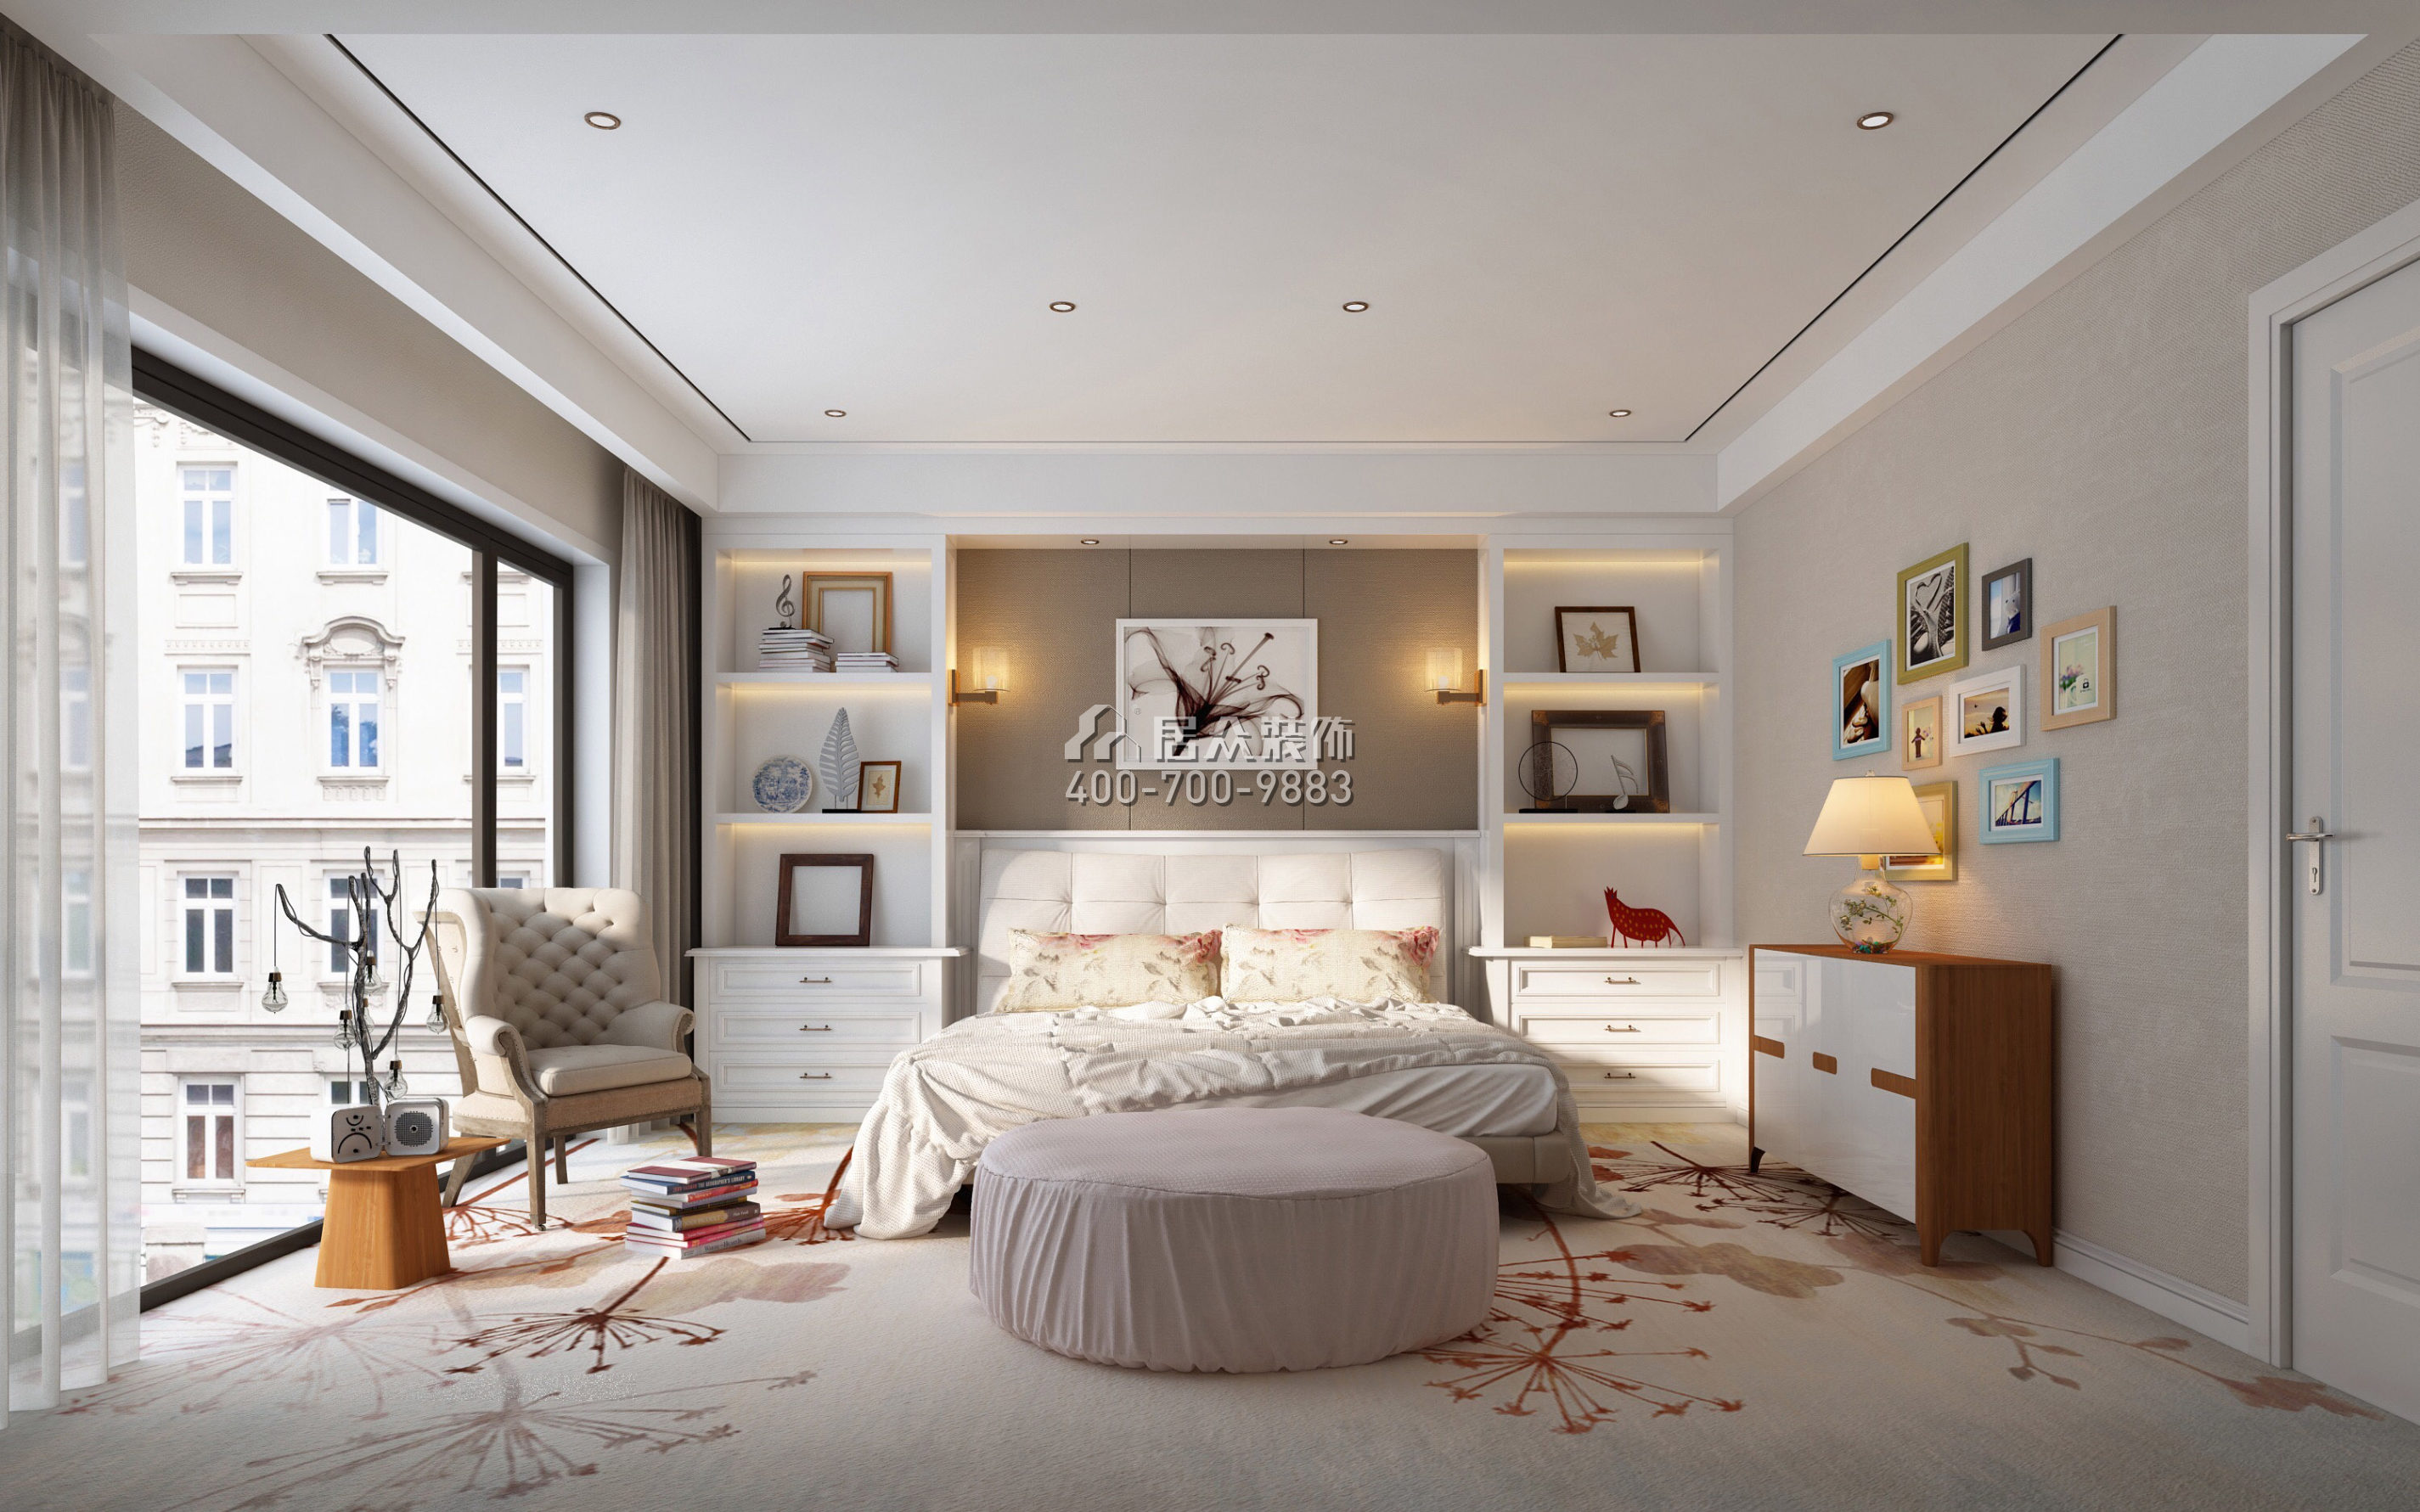 紅樹別院173平方米美式風格平層戶型臥室裝修效果圖